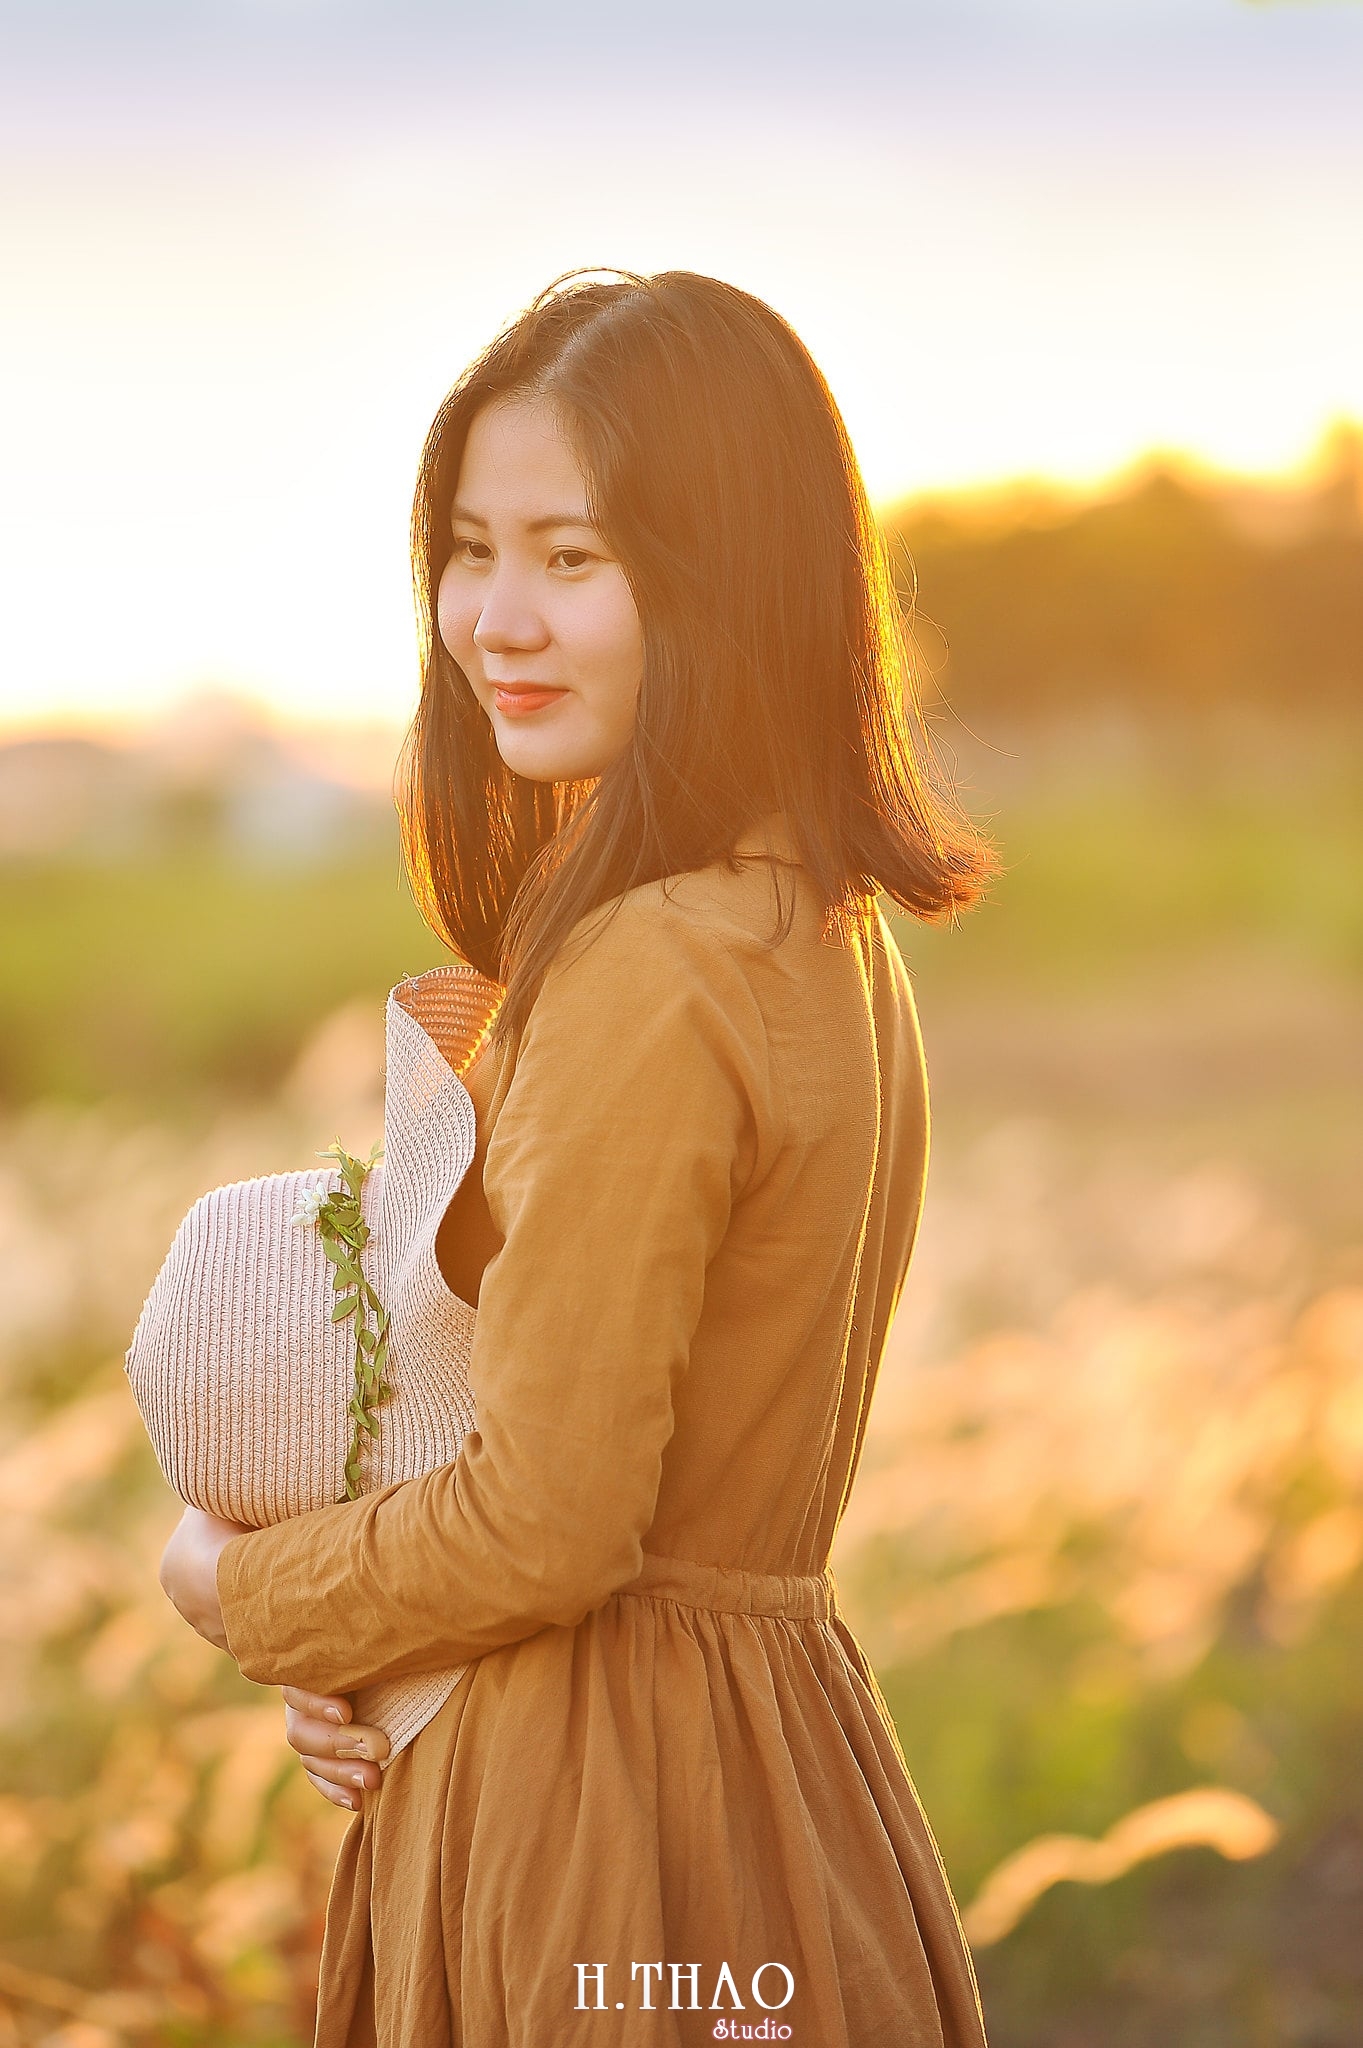 Co lau quan 9 1 min - Album ảnh chân dung nghệ thuật ngược nắng đẹp lung linh - HThao Studio